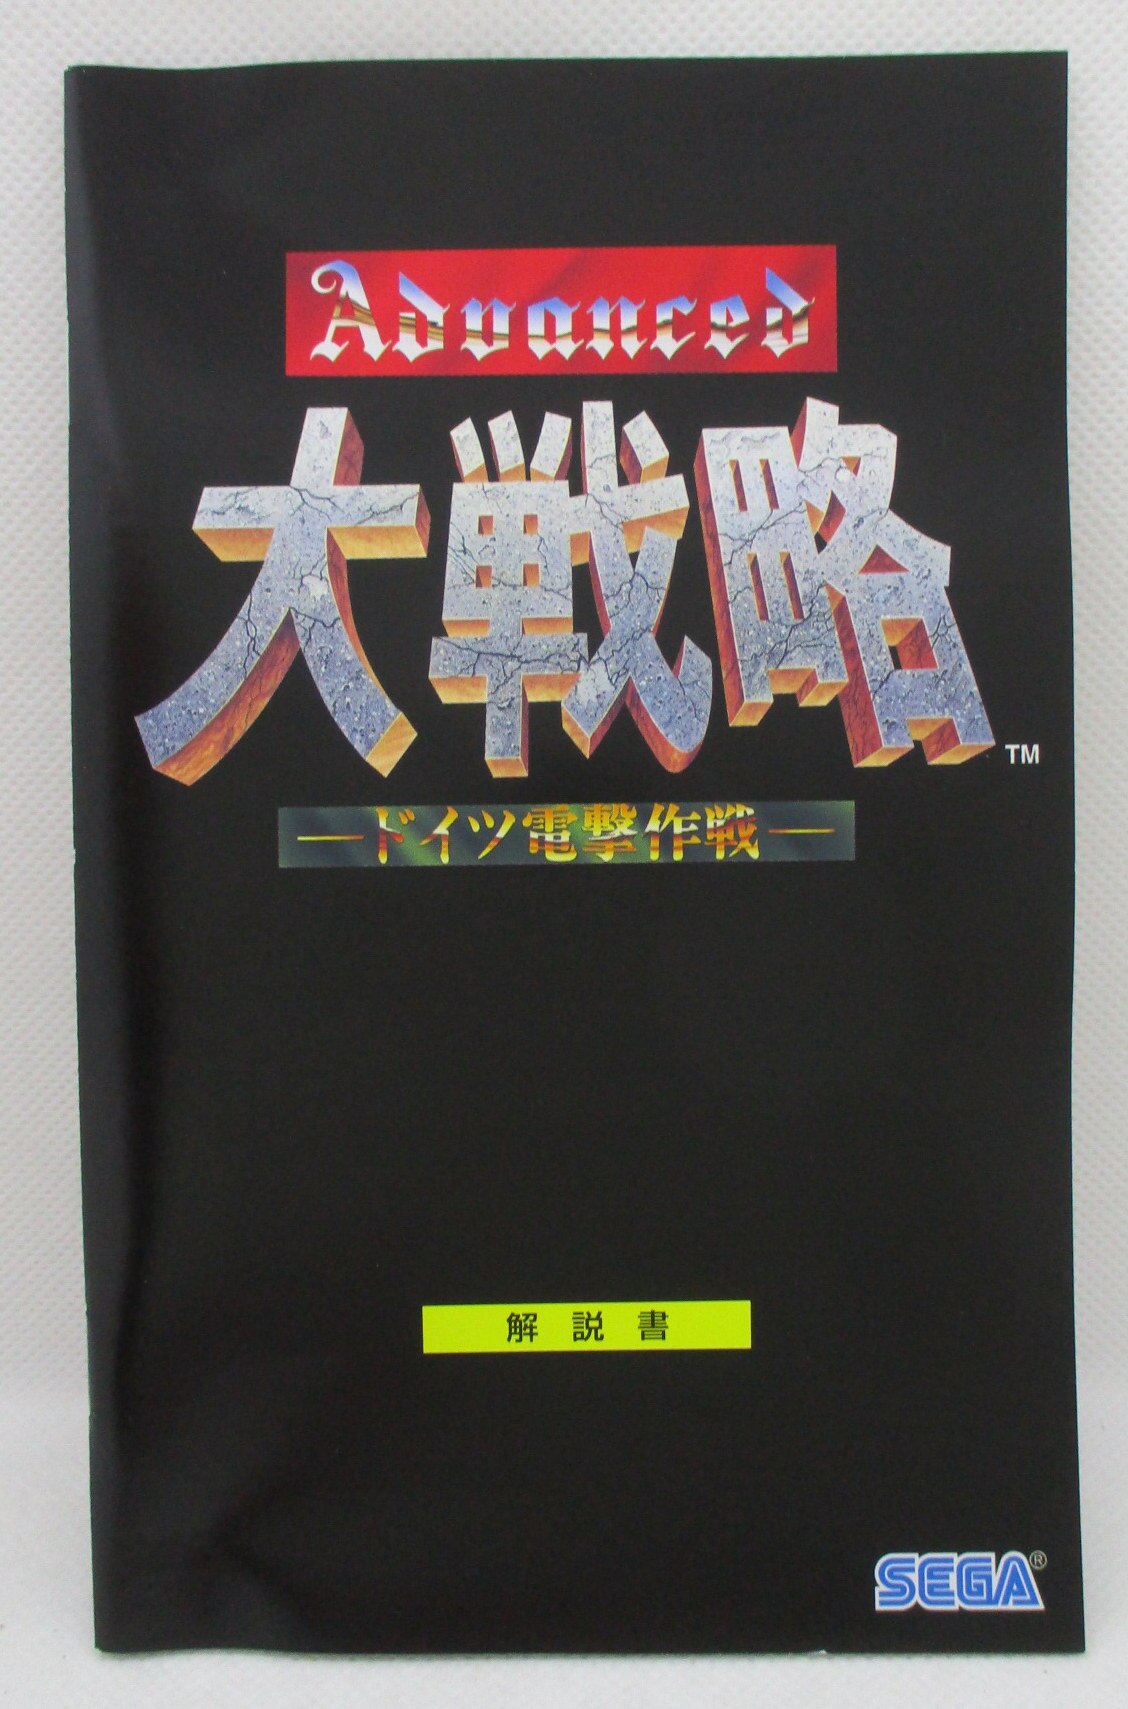 PS2 アドバンスド大戦略 セガ エイジス2500シリーズ Vol.22 (修正版